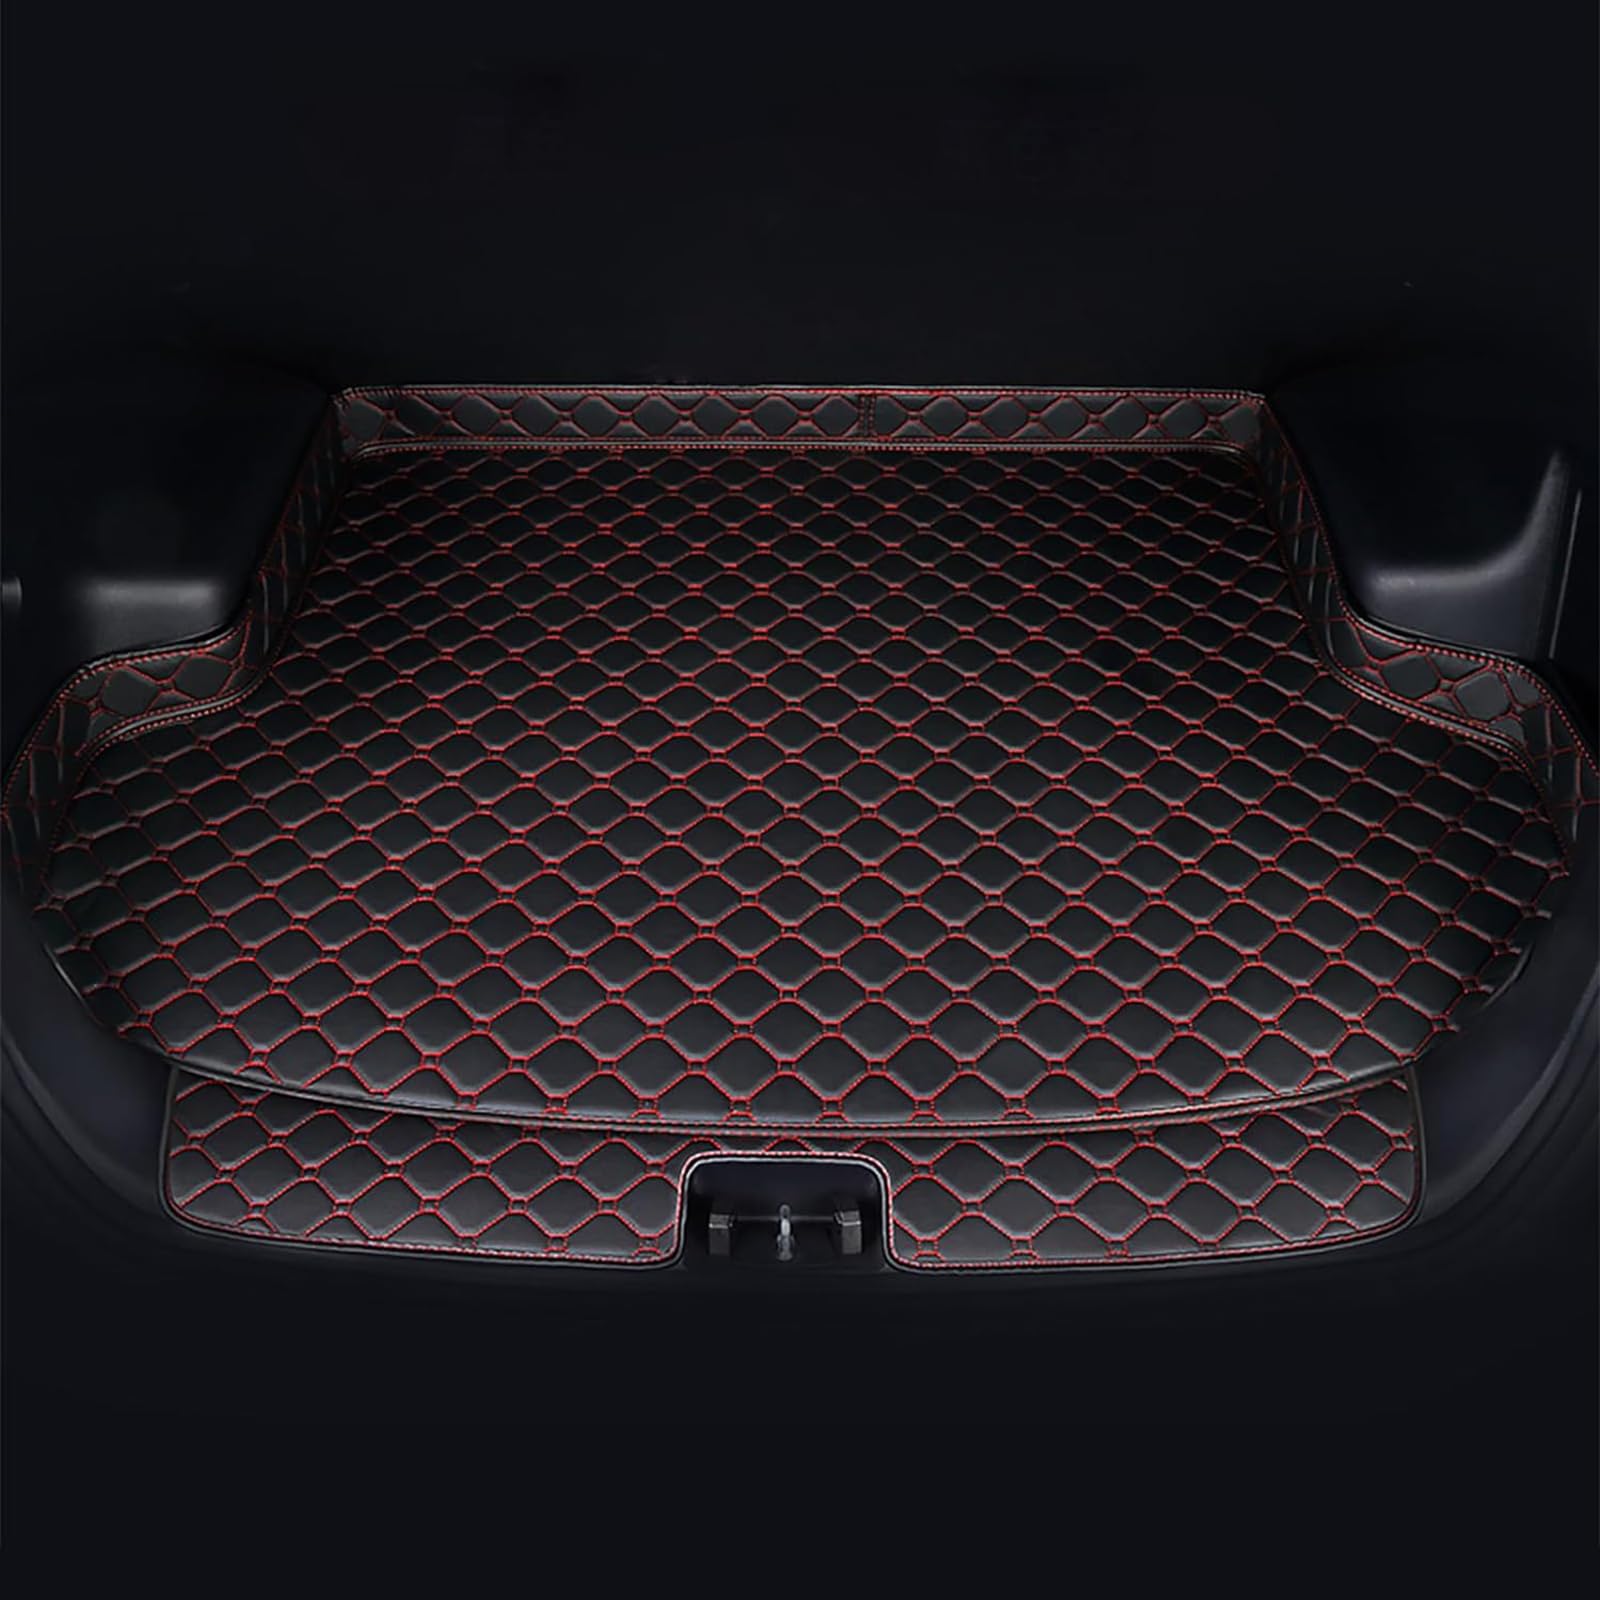 Auto Leder Kofferraummatten Für Audi Q7 4L 7-Seat 2005-2015, Wasserdicht rutschfest Kofferraumwanne Allwetter Cargo Teppich Schutzmatte Interieur Zubehör,C/Black-Red von FNUQKREF